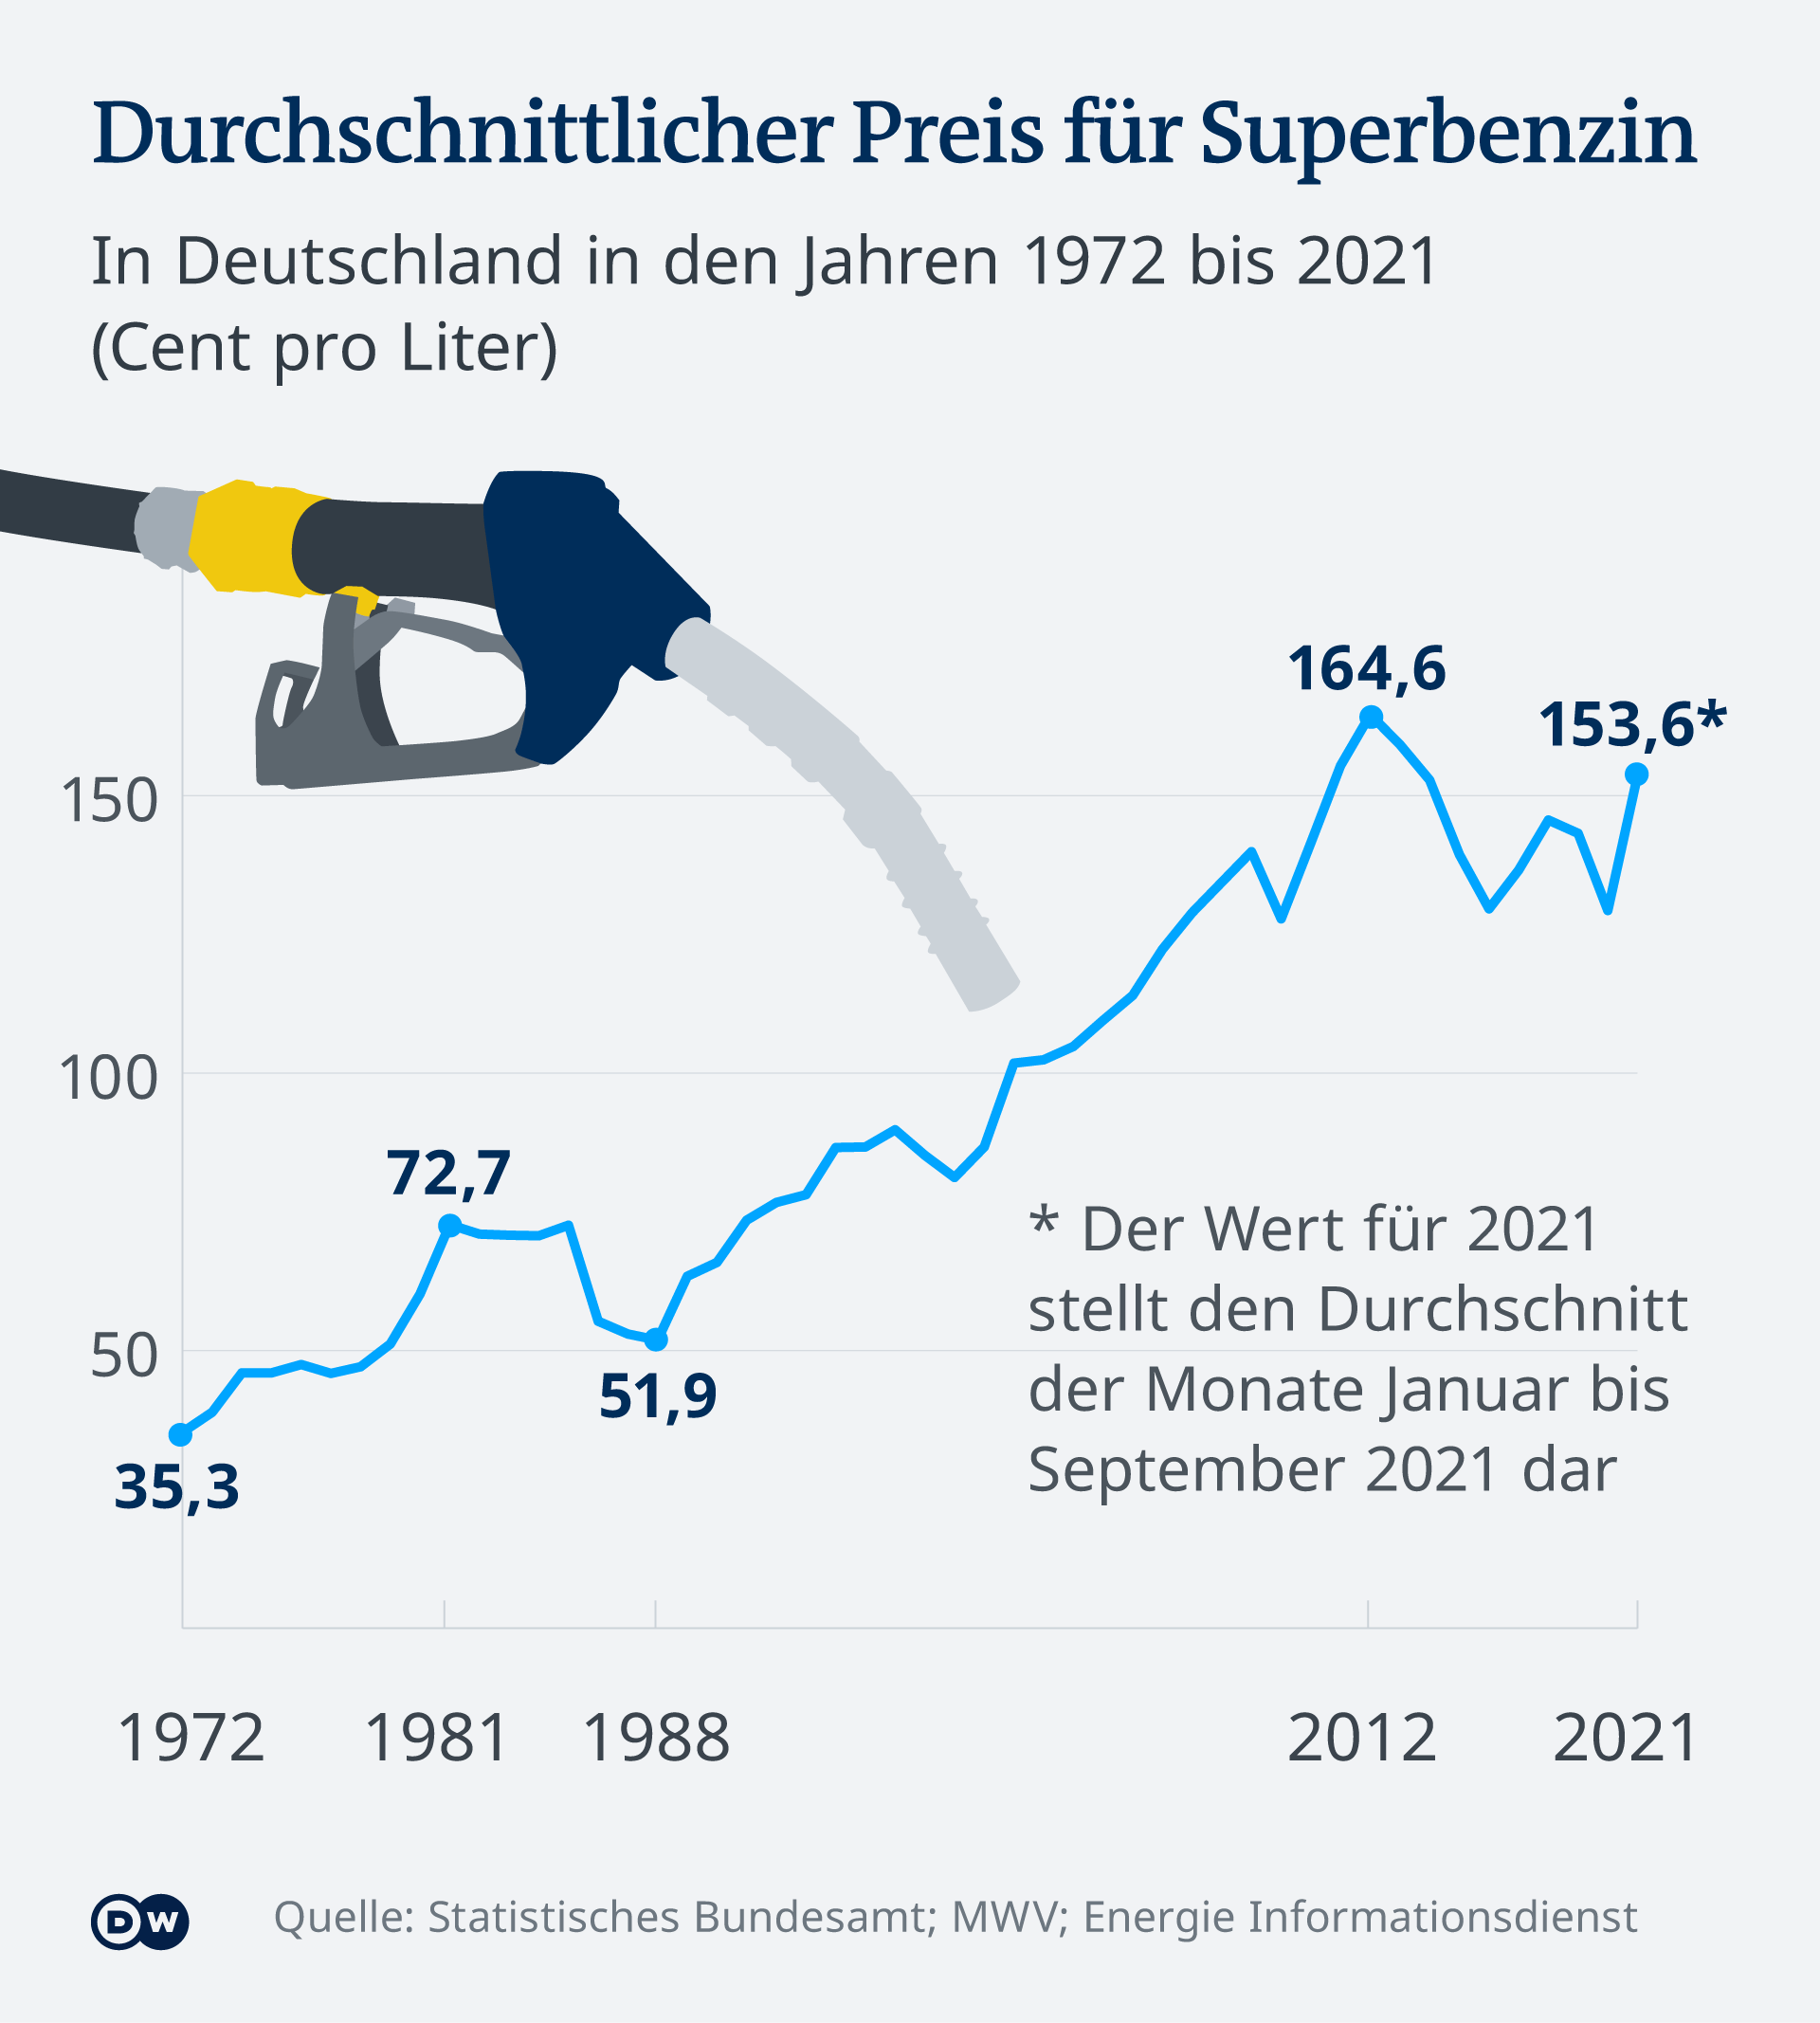 Просечна годишна цена на бензинот супер во Германија од 1972 до 2021 година